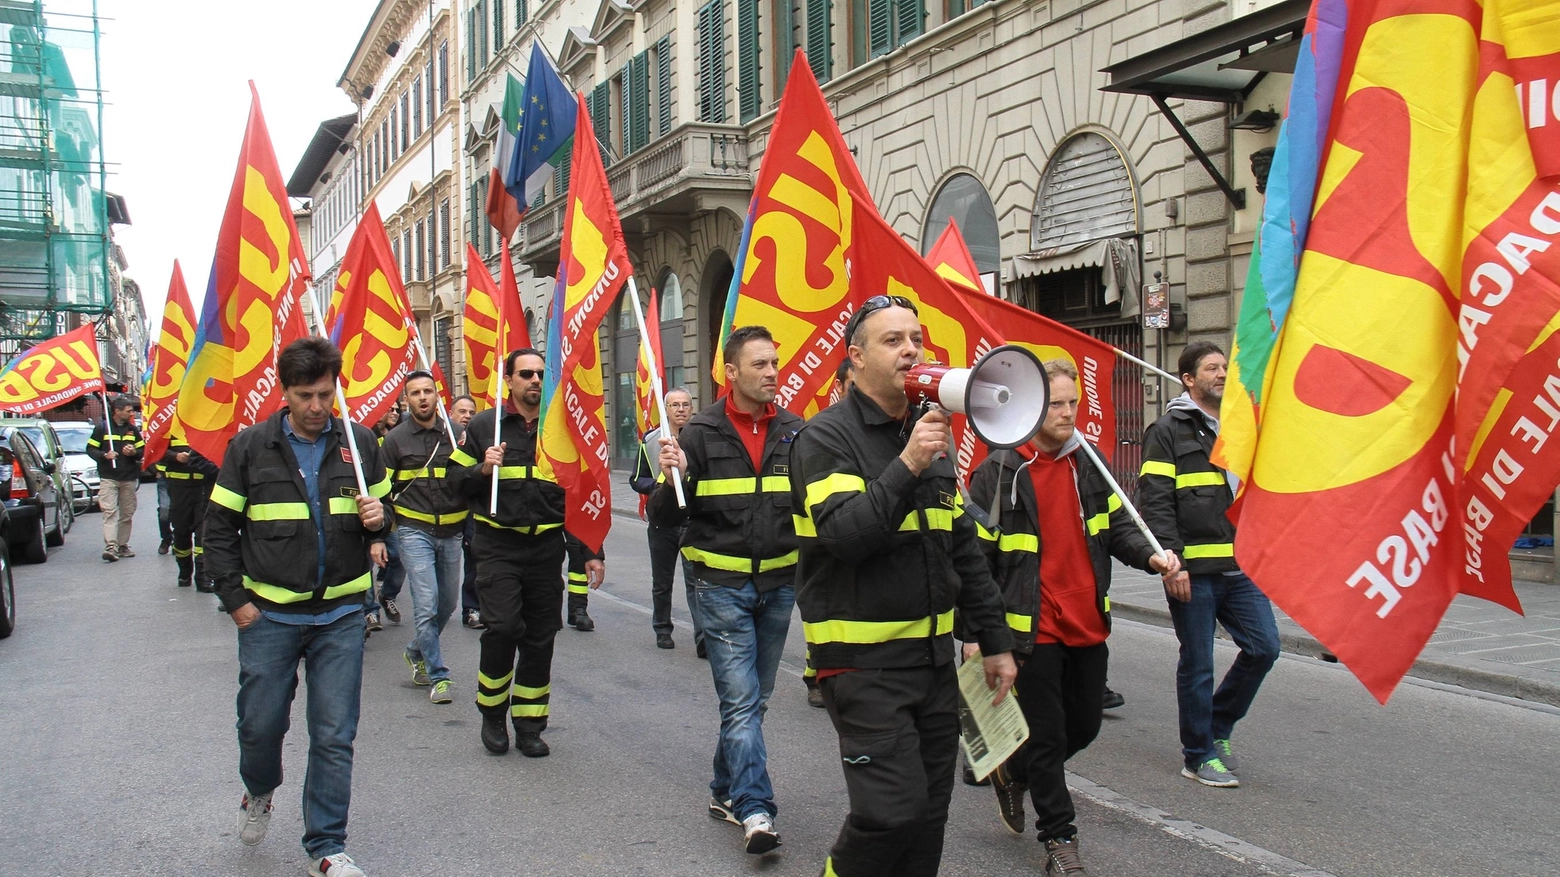 La protesta dei vigili del fuoco (Umberto Visintini / New PressPhoto)